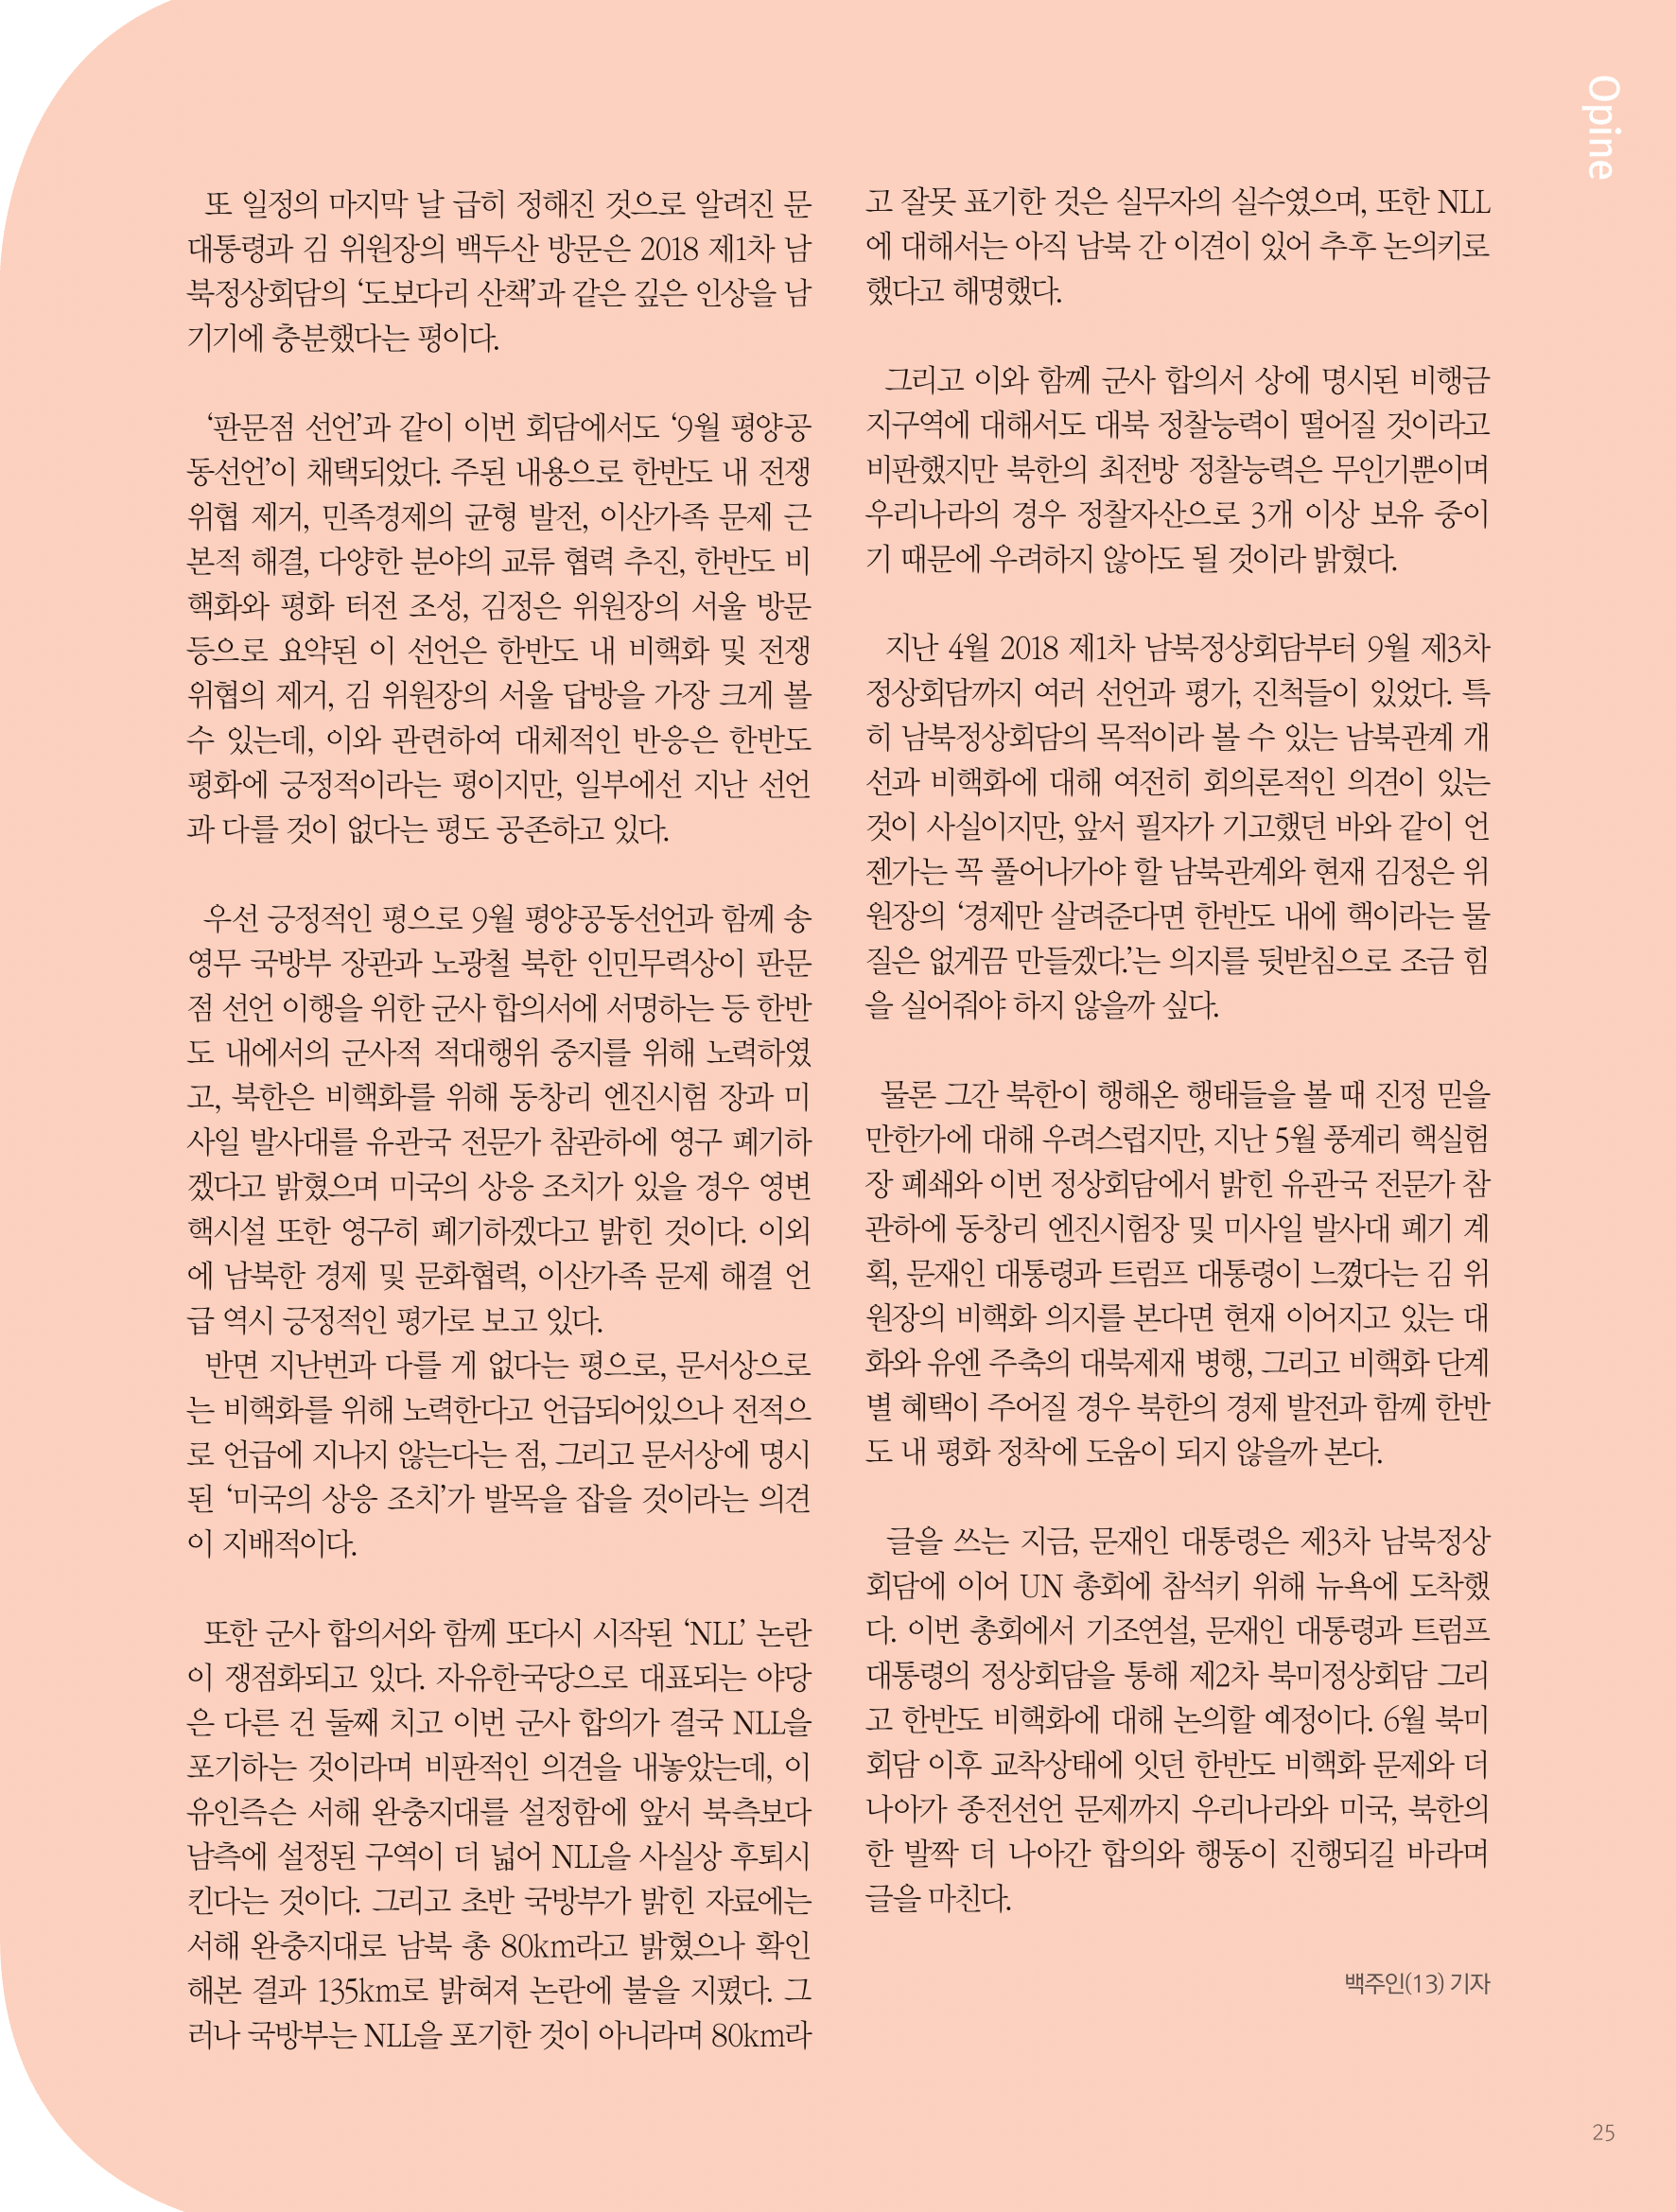 뜻새김 신문 72호 25